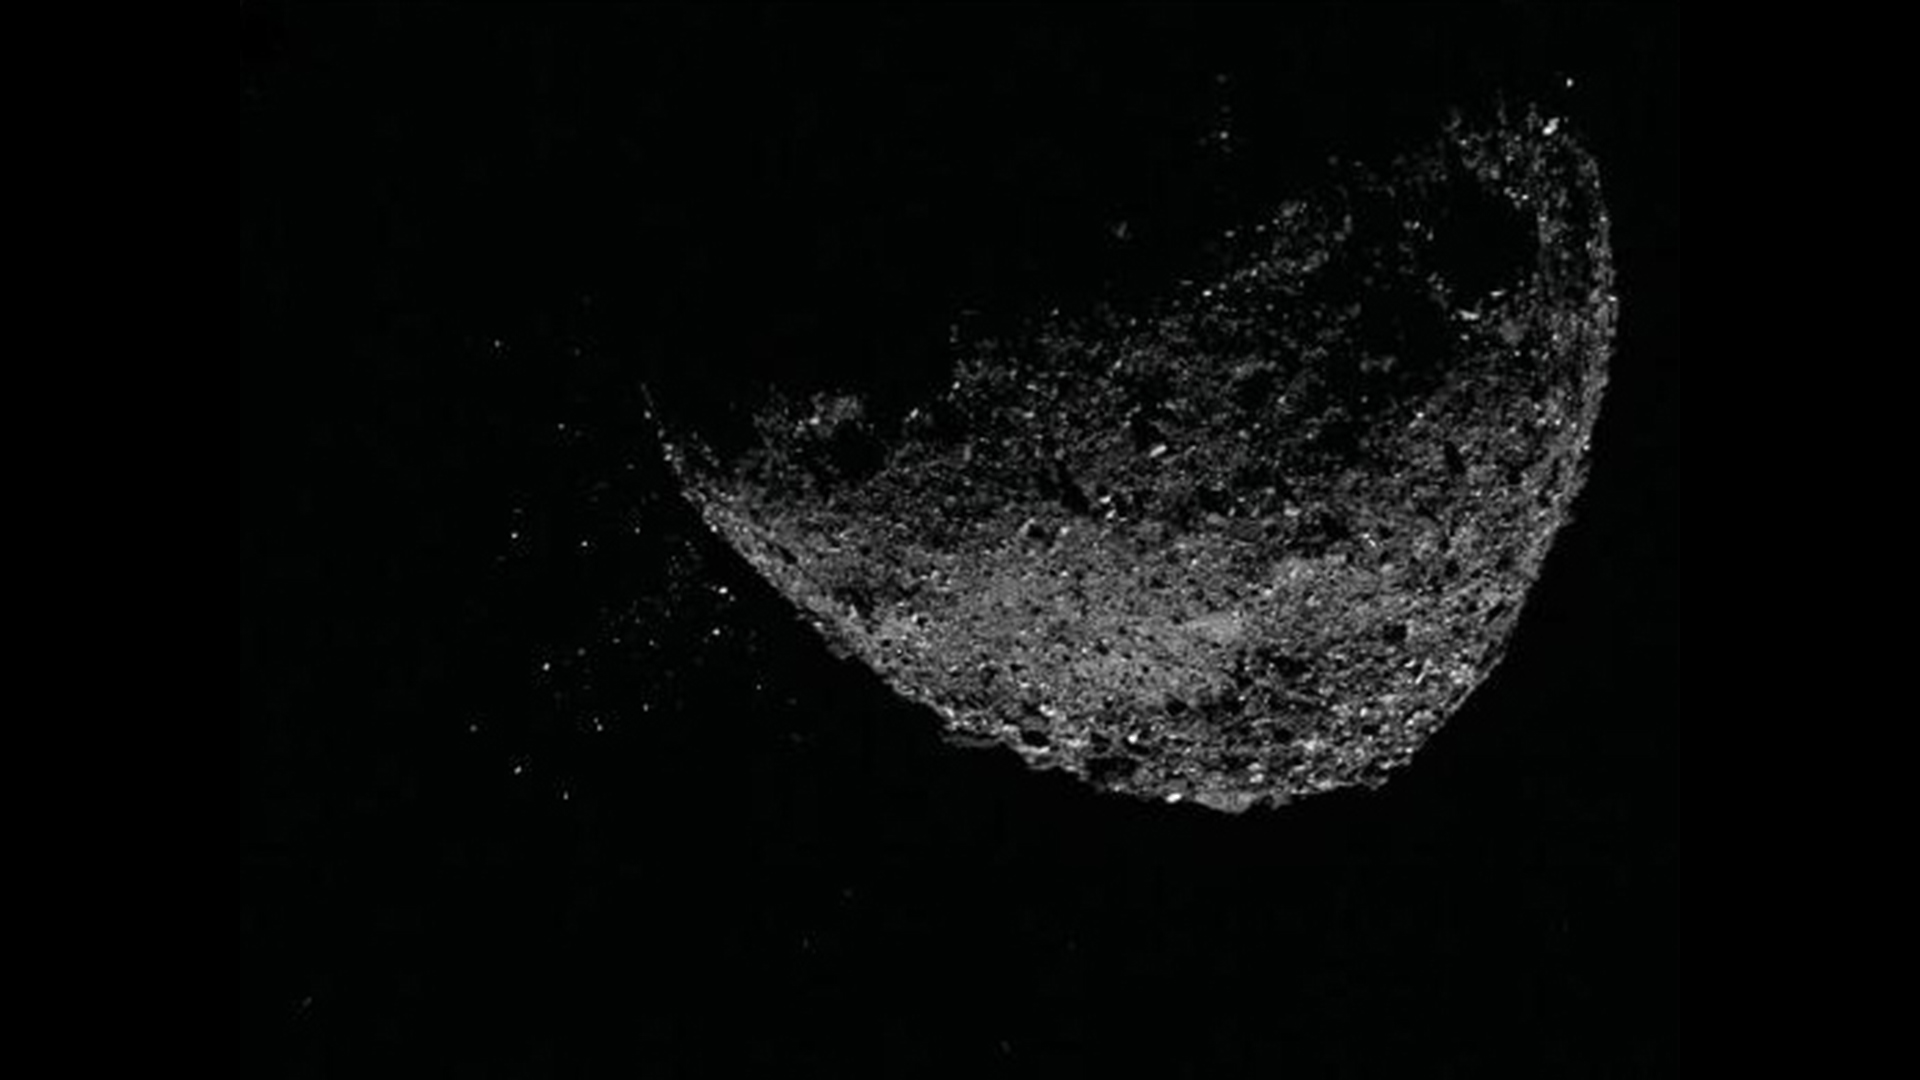 Esta vista del asteroide Bennu expulsando partículas de su superficie el 6 de enero de 2019 se creó combinando dos imágenes tomadas por el generador de imágenes NavCam 1 a bordo de la nave espacial OSIRIS-REx de la NASA: una imagen de exposición corta, que muestra claramente el asteroide, y una imagen de exposición larga. .  -Exponer la imagen (cinco segundos) que muestra claramente las partículas.